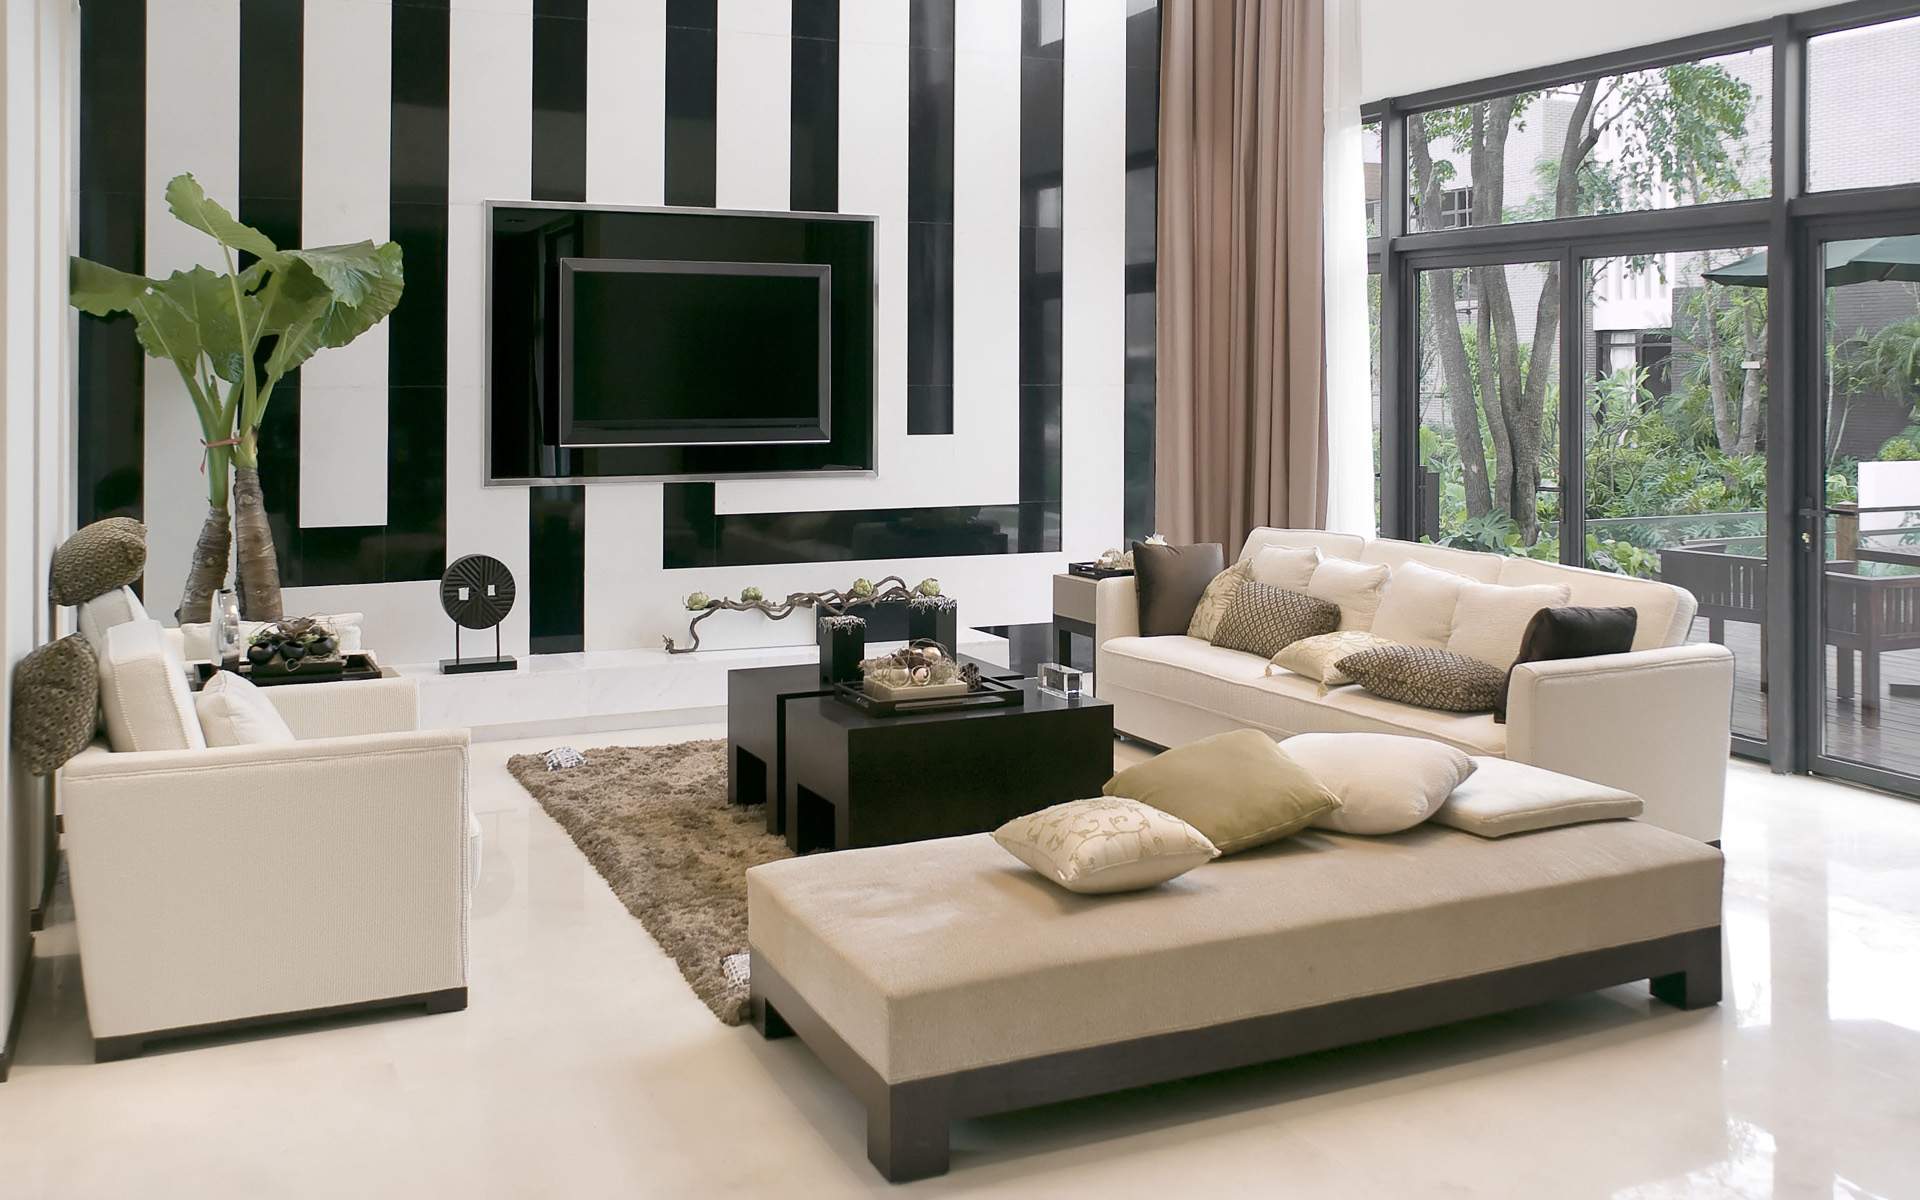 Contemporary Sofas for Home Interior livingroom : modern contemporary living room ideas dance chairs homes in  atlanta DVIUIZO